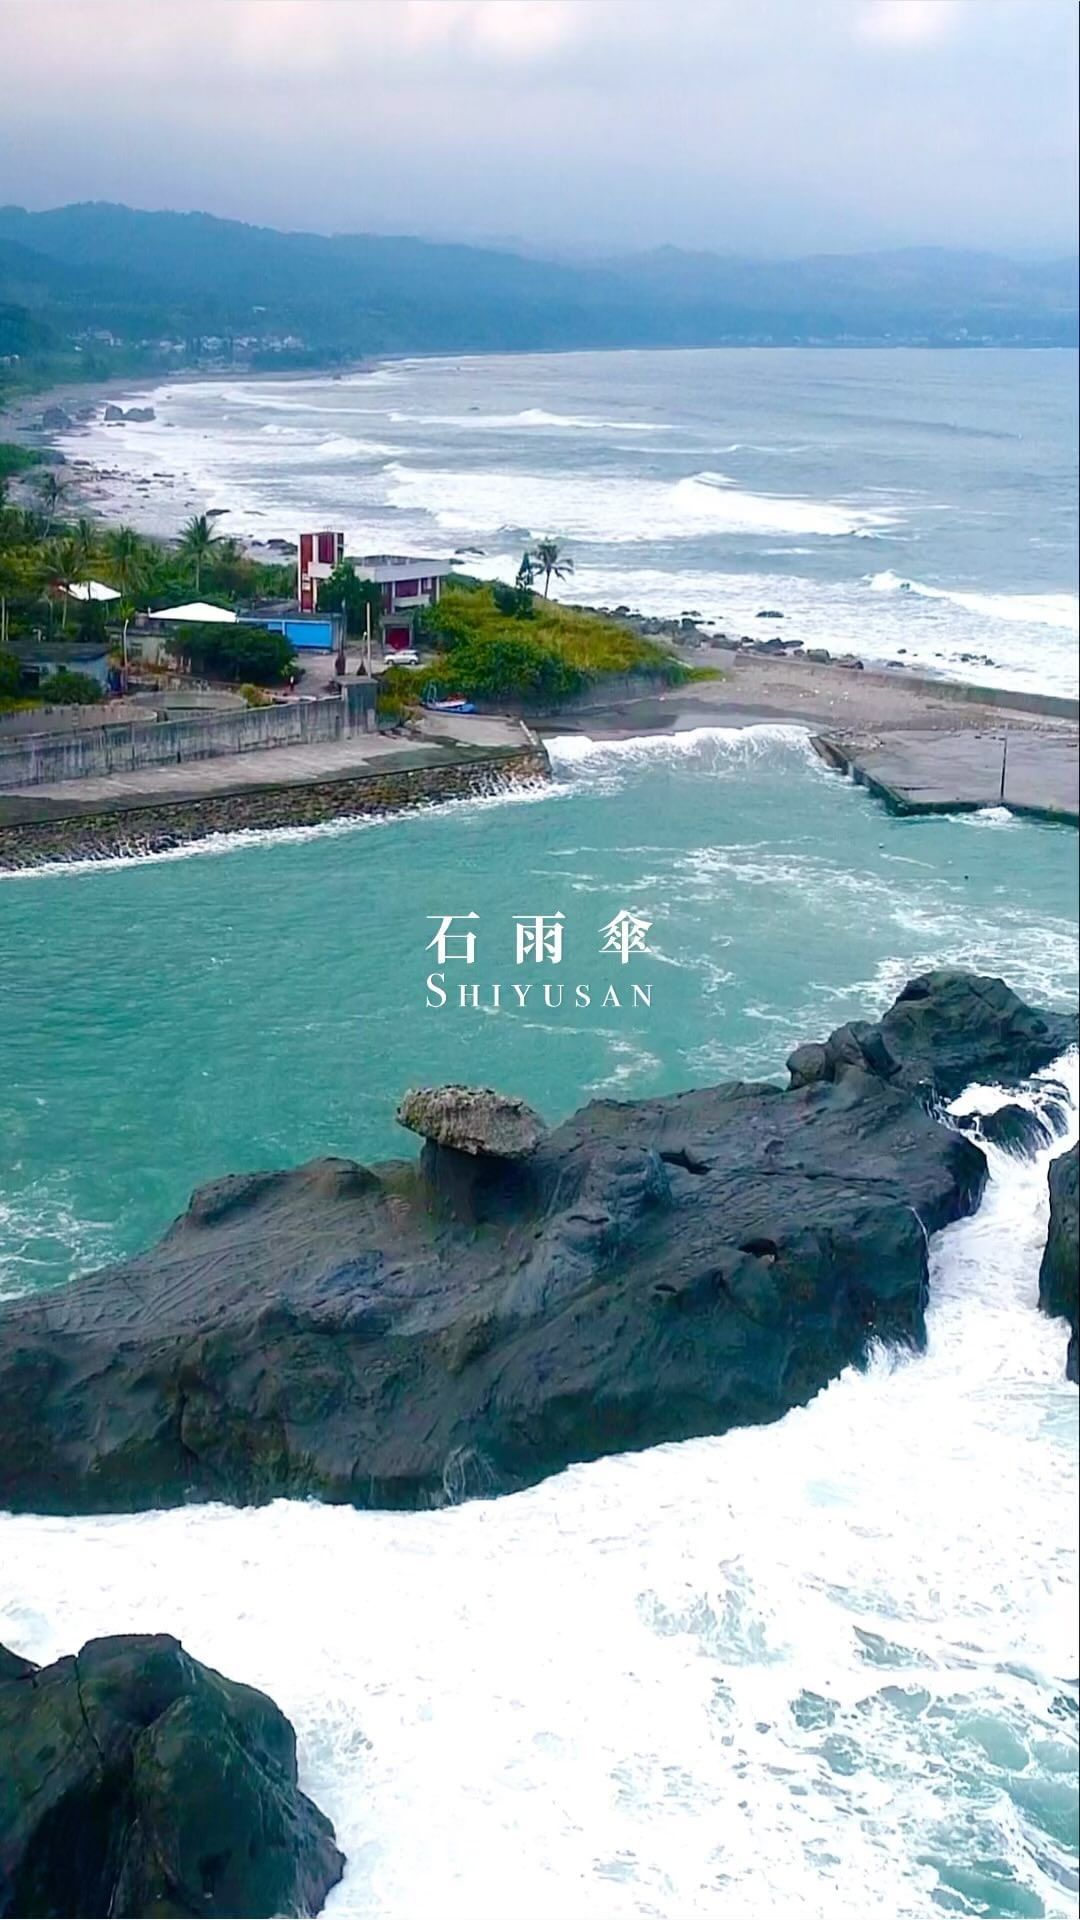 冬天的大海是一種浪漫主義-歡迎在您的照片標記我們 @ecnsa讓更多人看見台灣最美東海岸在想投稿的照片上標註@ecnsa就有機會在...